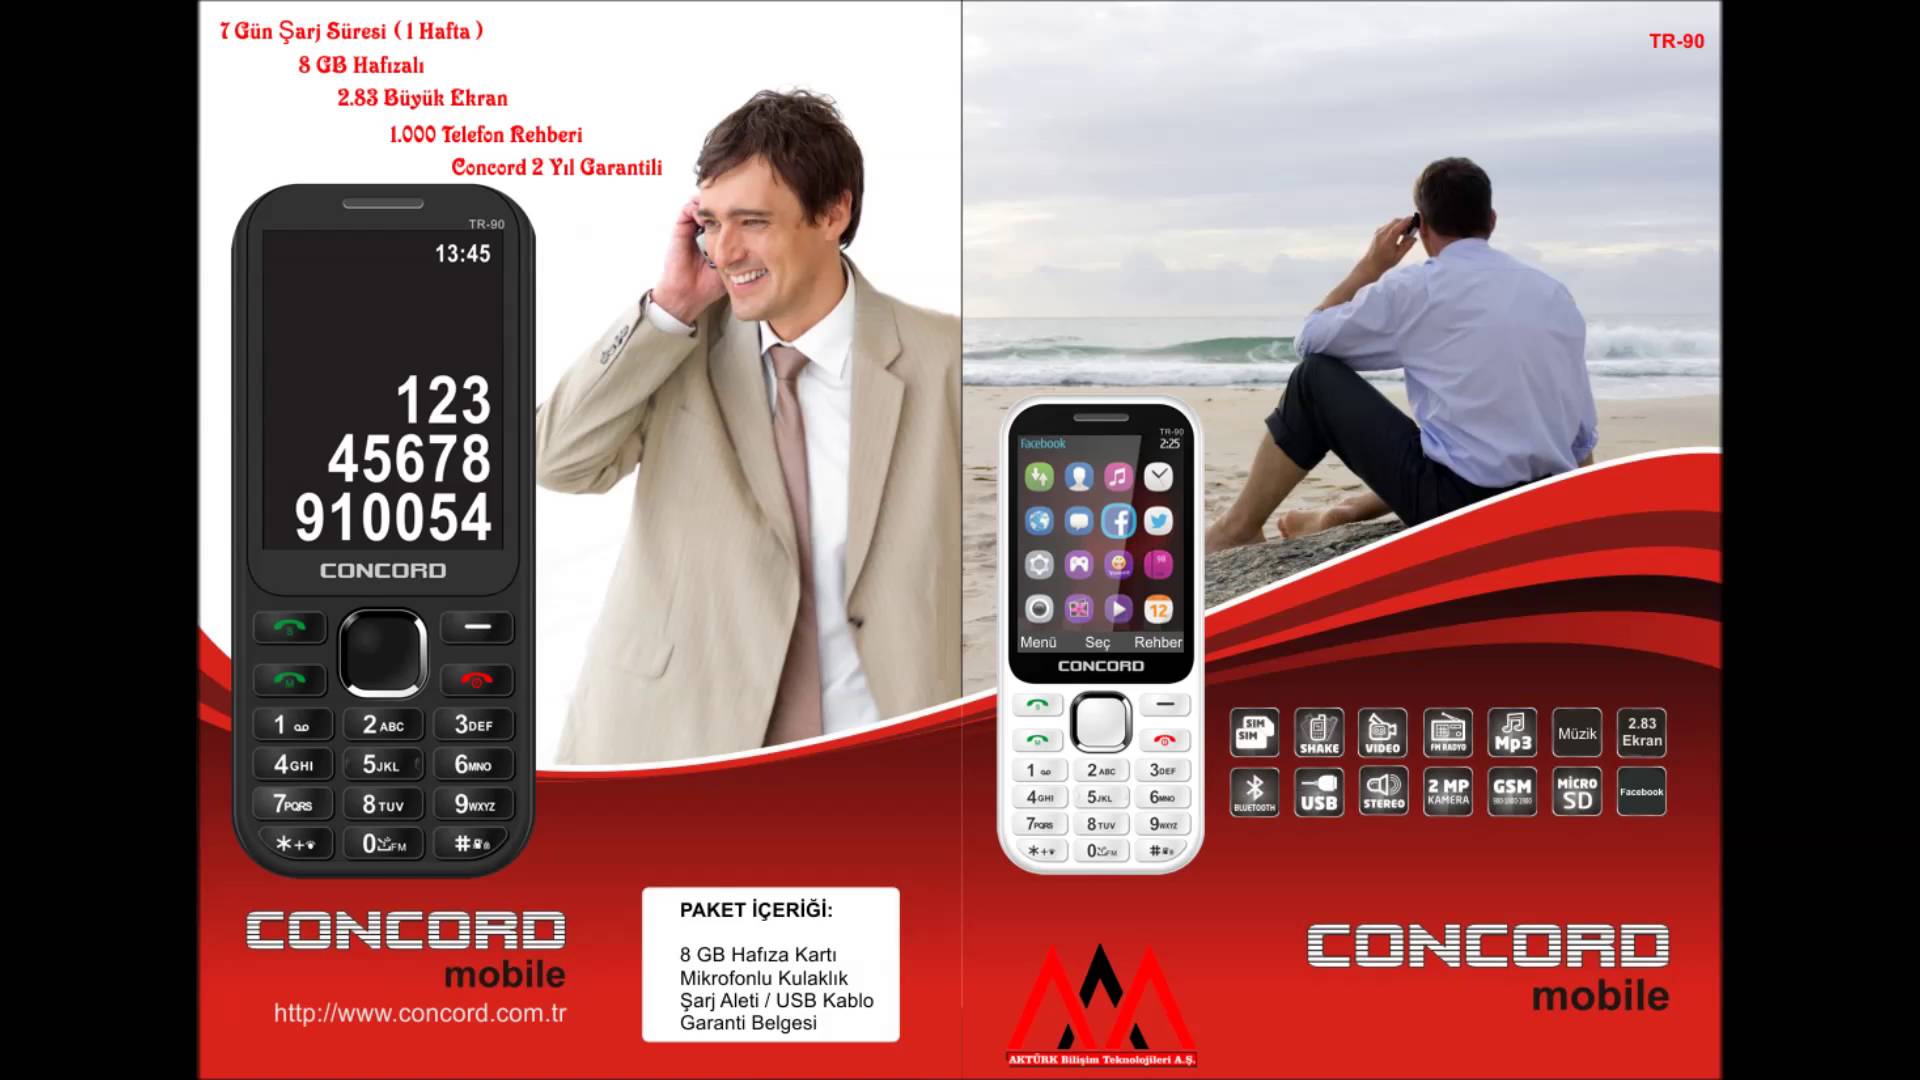 Concord TR90 Cep Telefonu 7 Gün Şarj, 8GB Hafıza, 2 MP Kamera